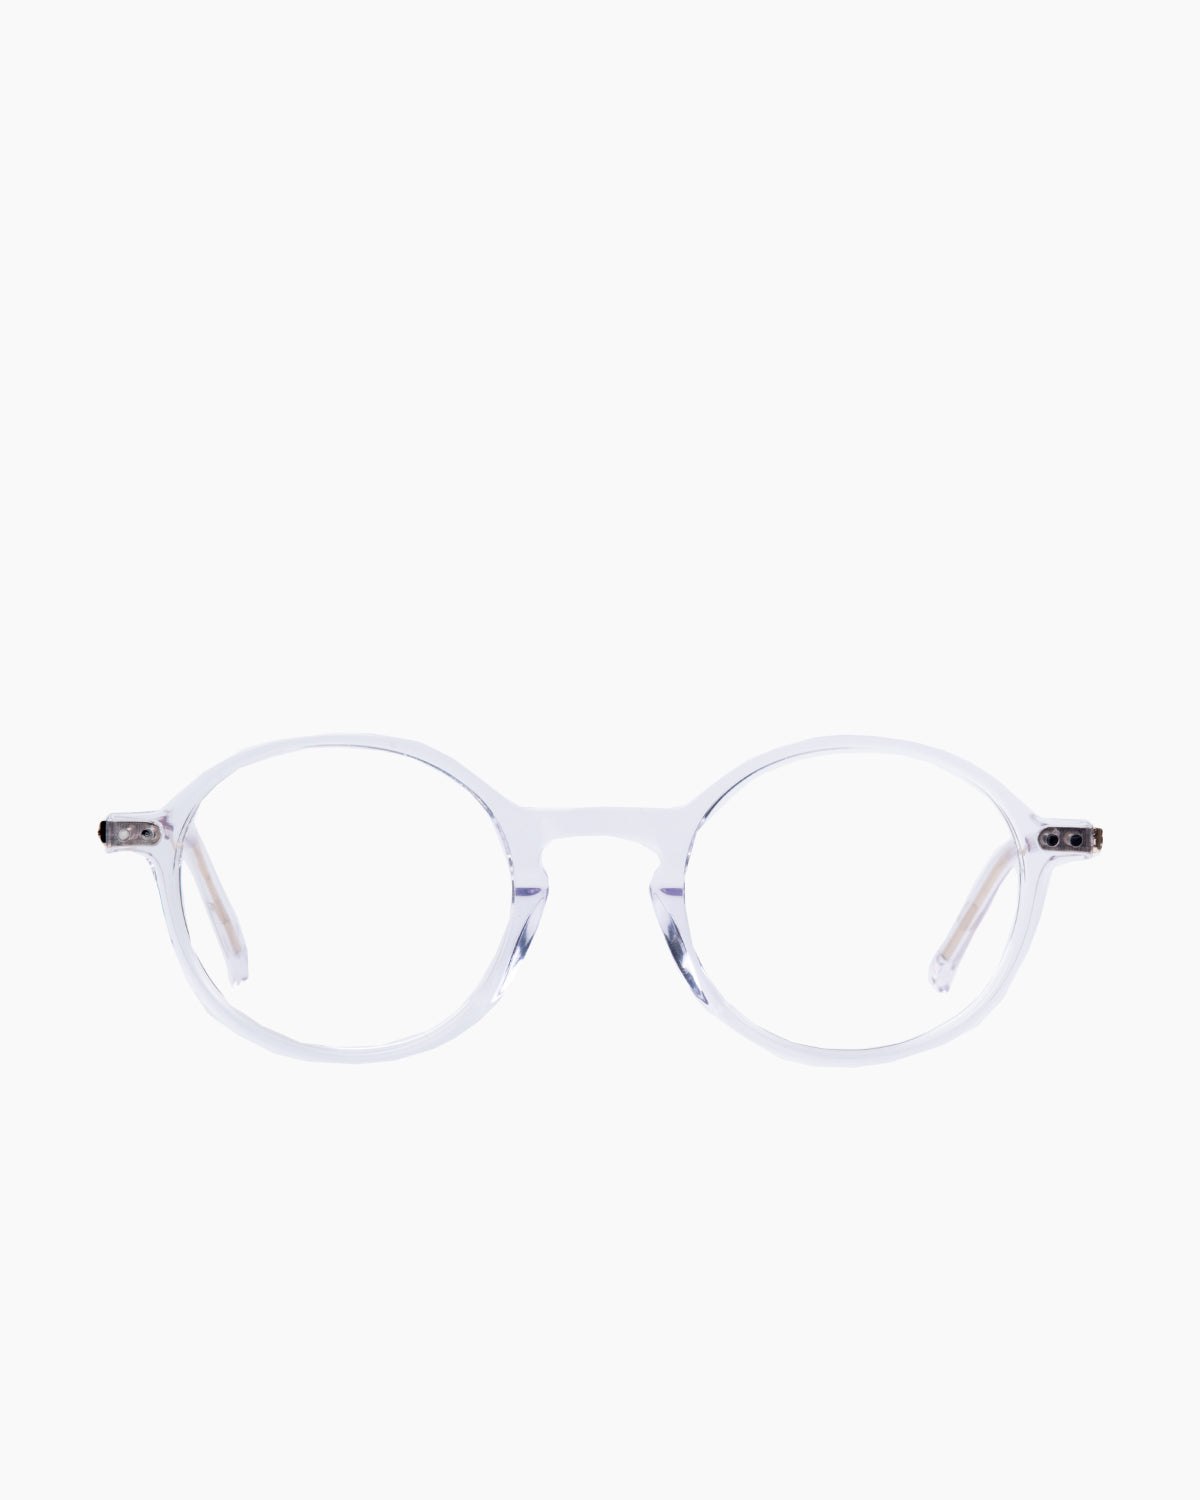 Evolve - Jason - 302 | glasses bar:  Marie-Sophie Dion